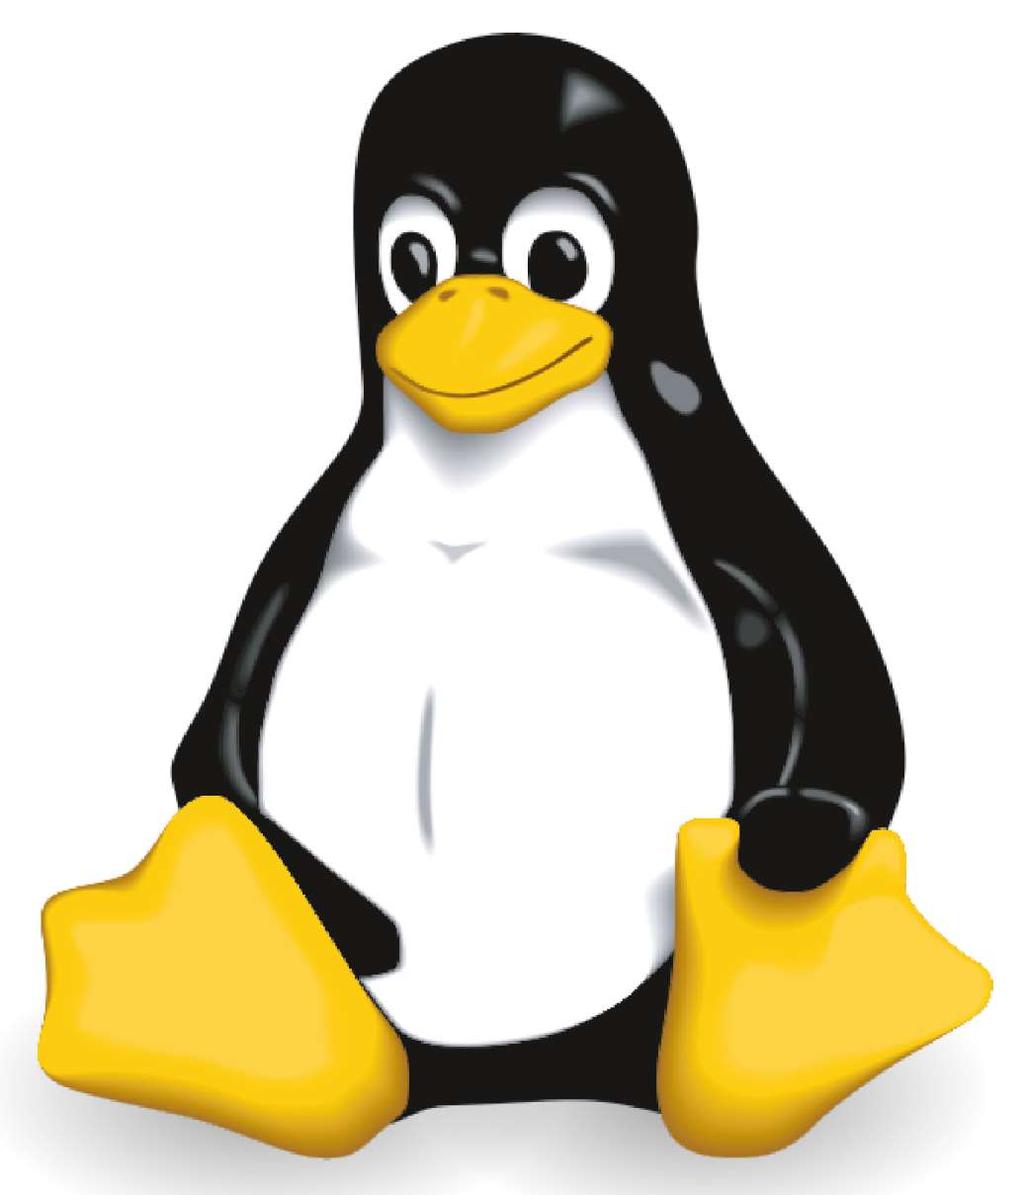 Linux Sistema operativo modulare con un kernel centrale Particolarmente versatile (funziona su cellulari, elettrodomestici e molti